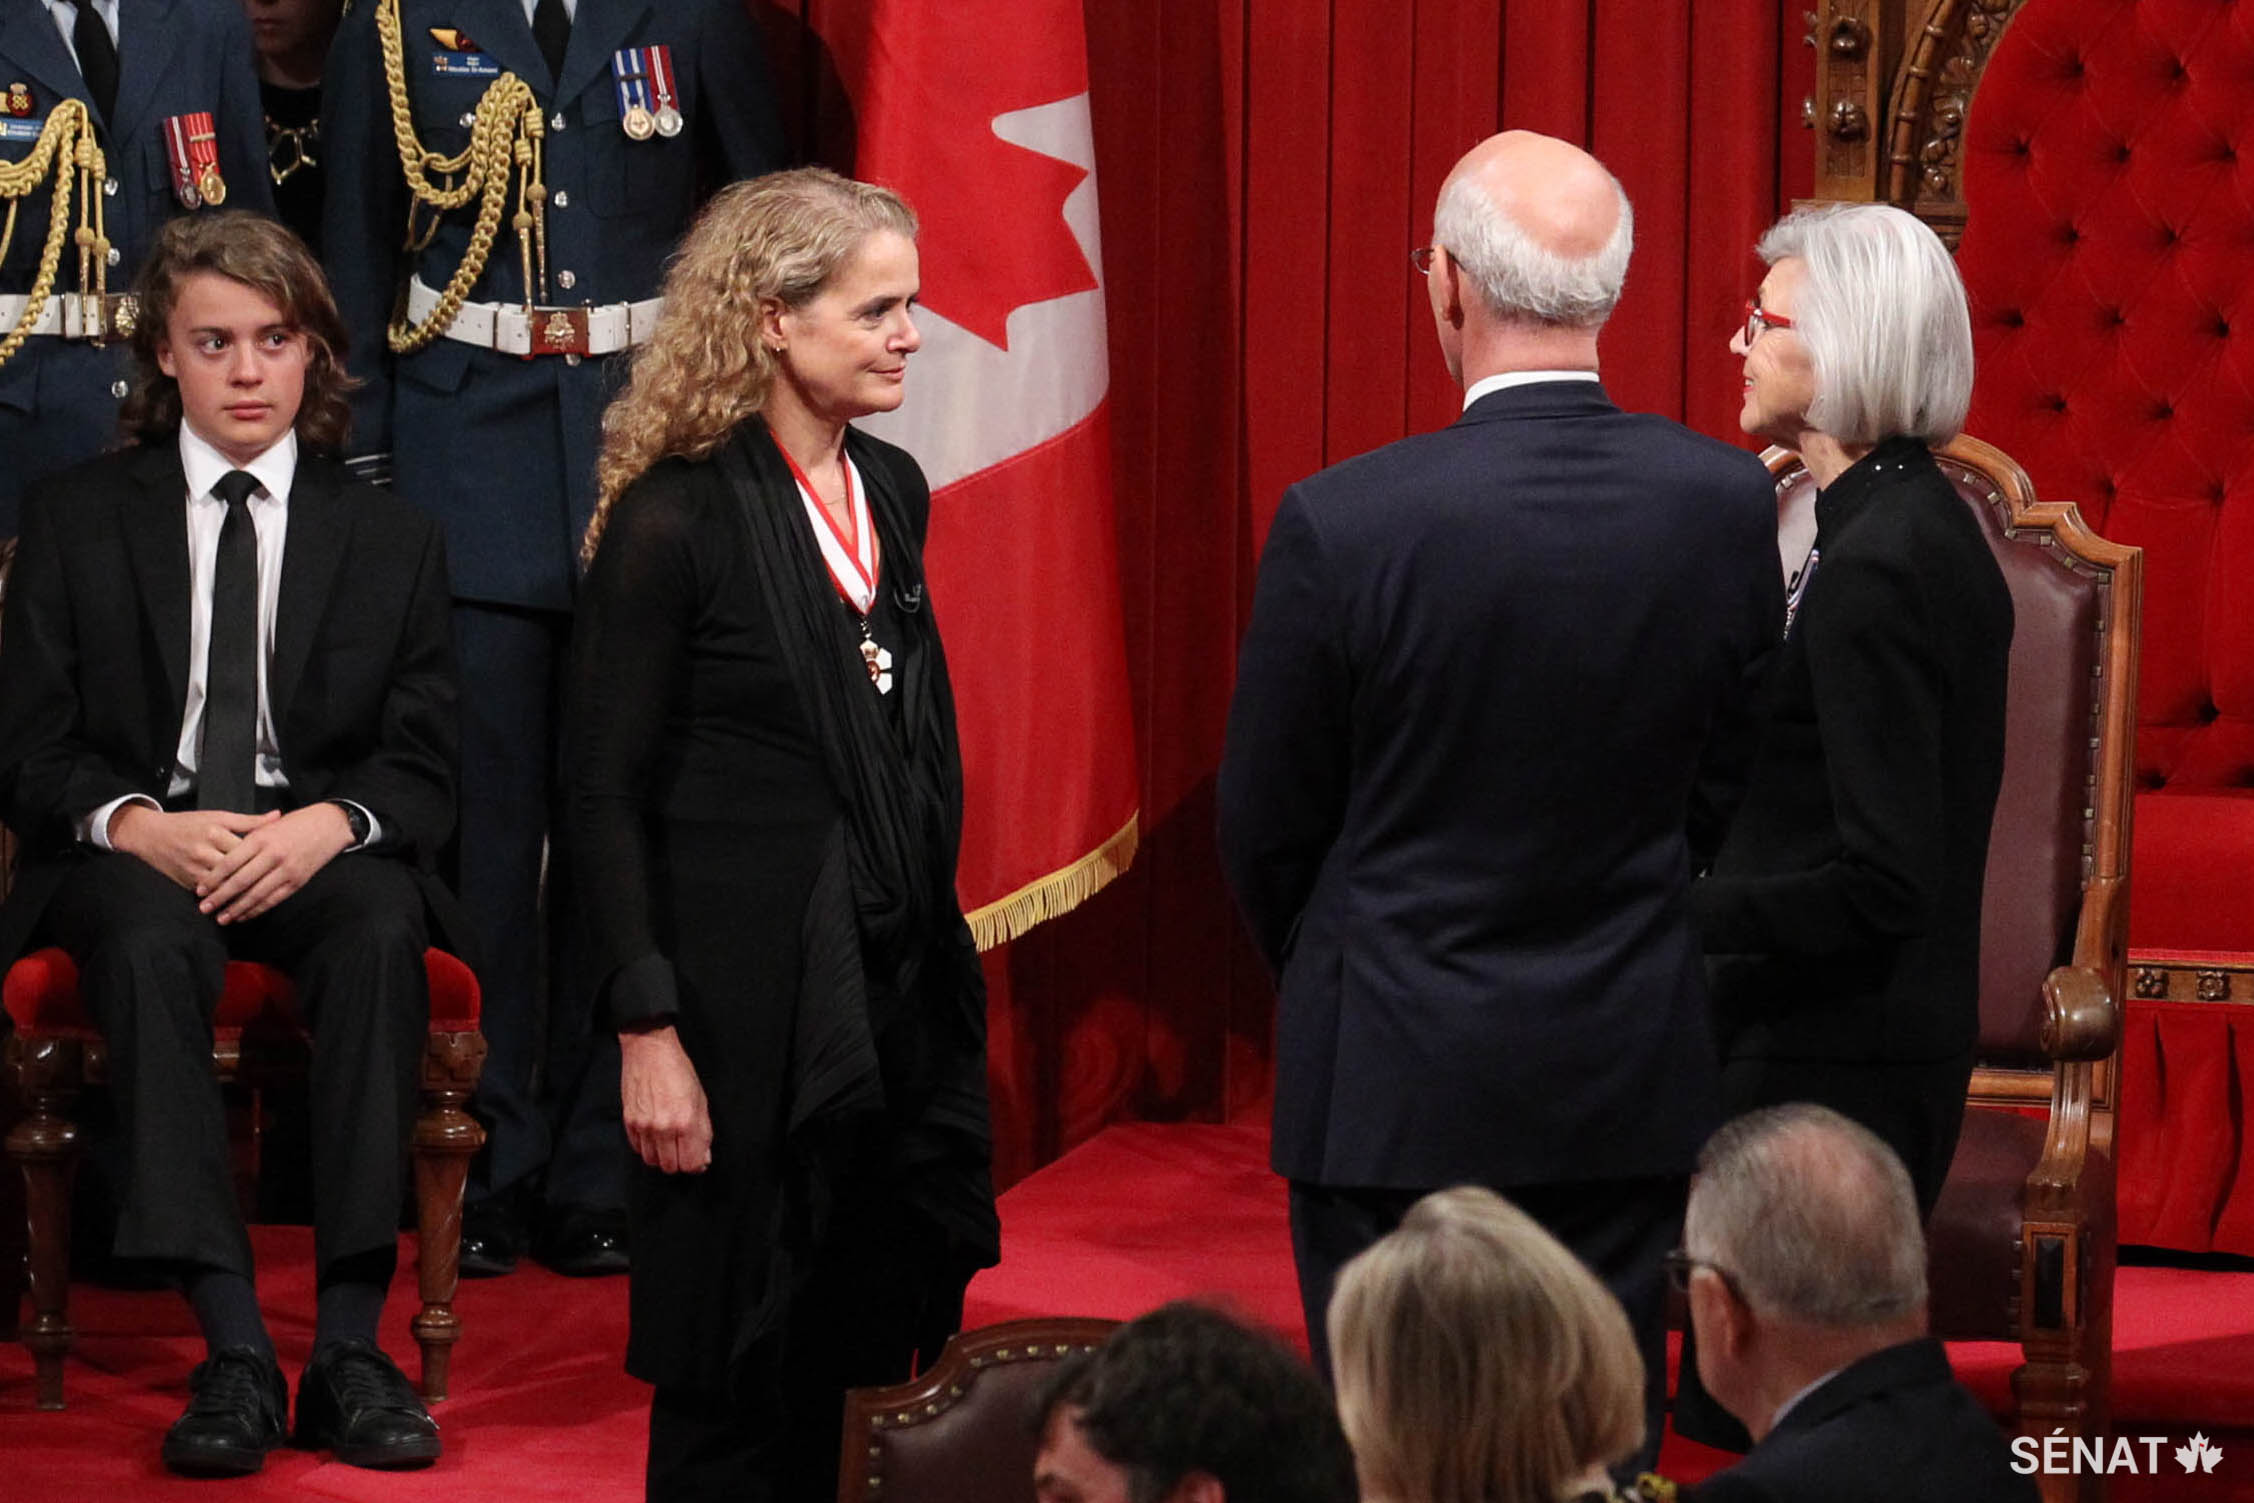 La juge en chef du Canada, Beverley McLachlin (au centre) administre les serments d’office à la gouverneure générale désignée, Julie Payette. Le fils de cette dernière, Laurier Payette Flynn, est assis tout près.